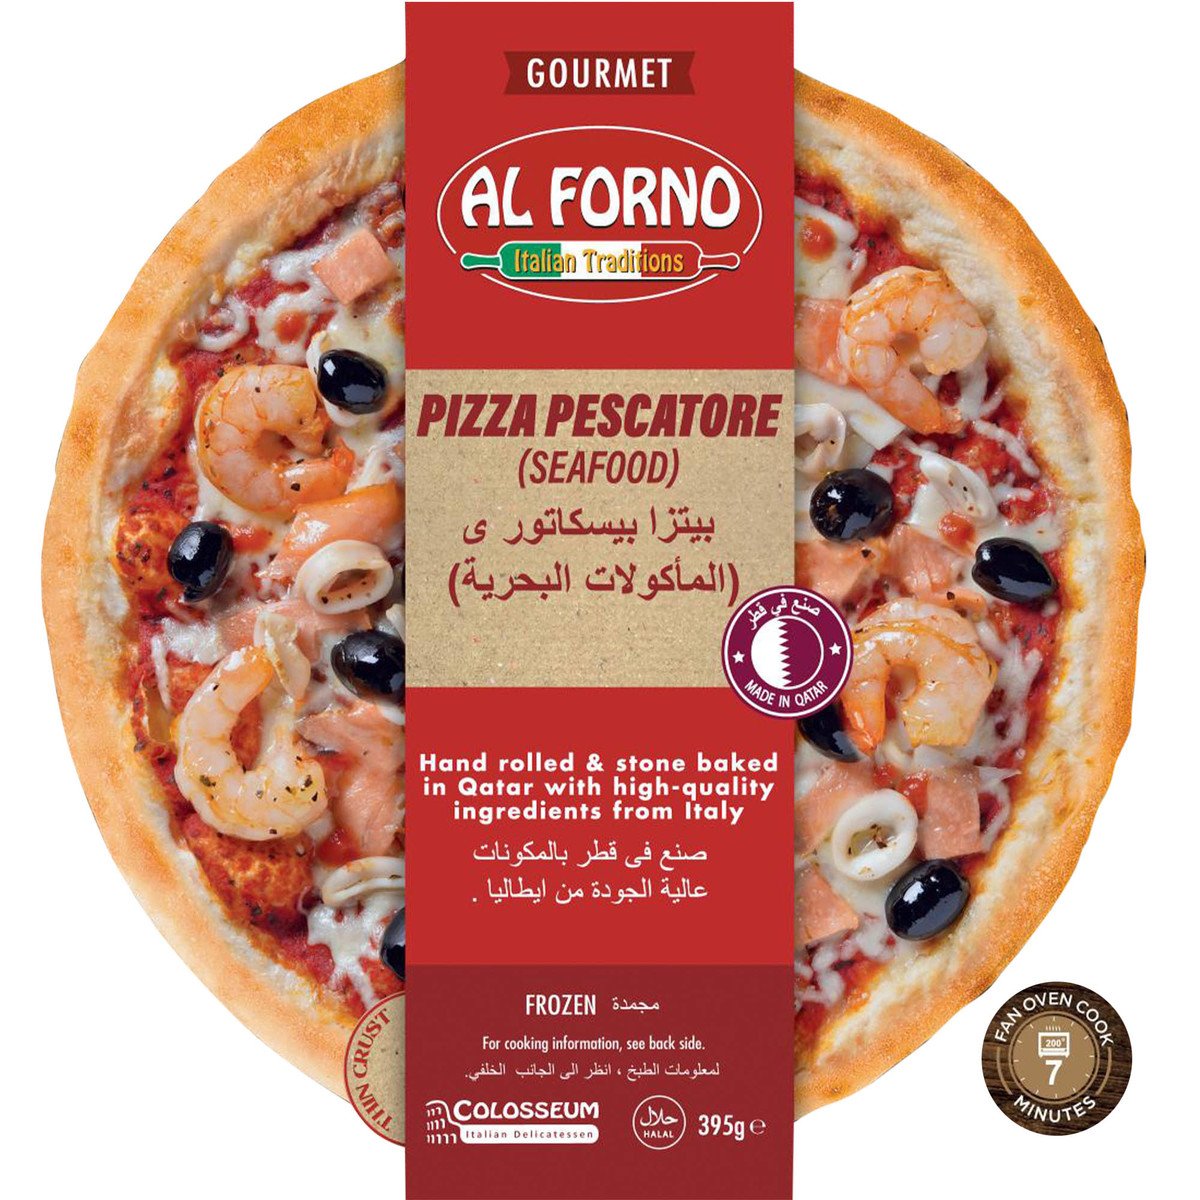 Al Forno Pizza Pescatore Seafood 395g